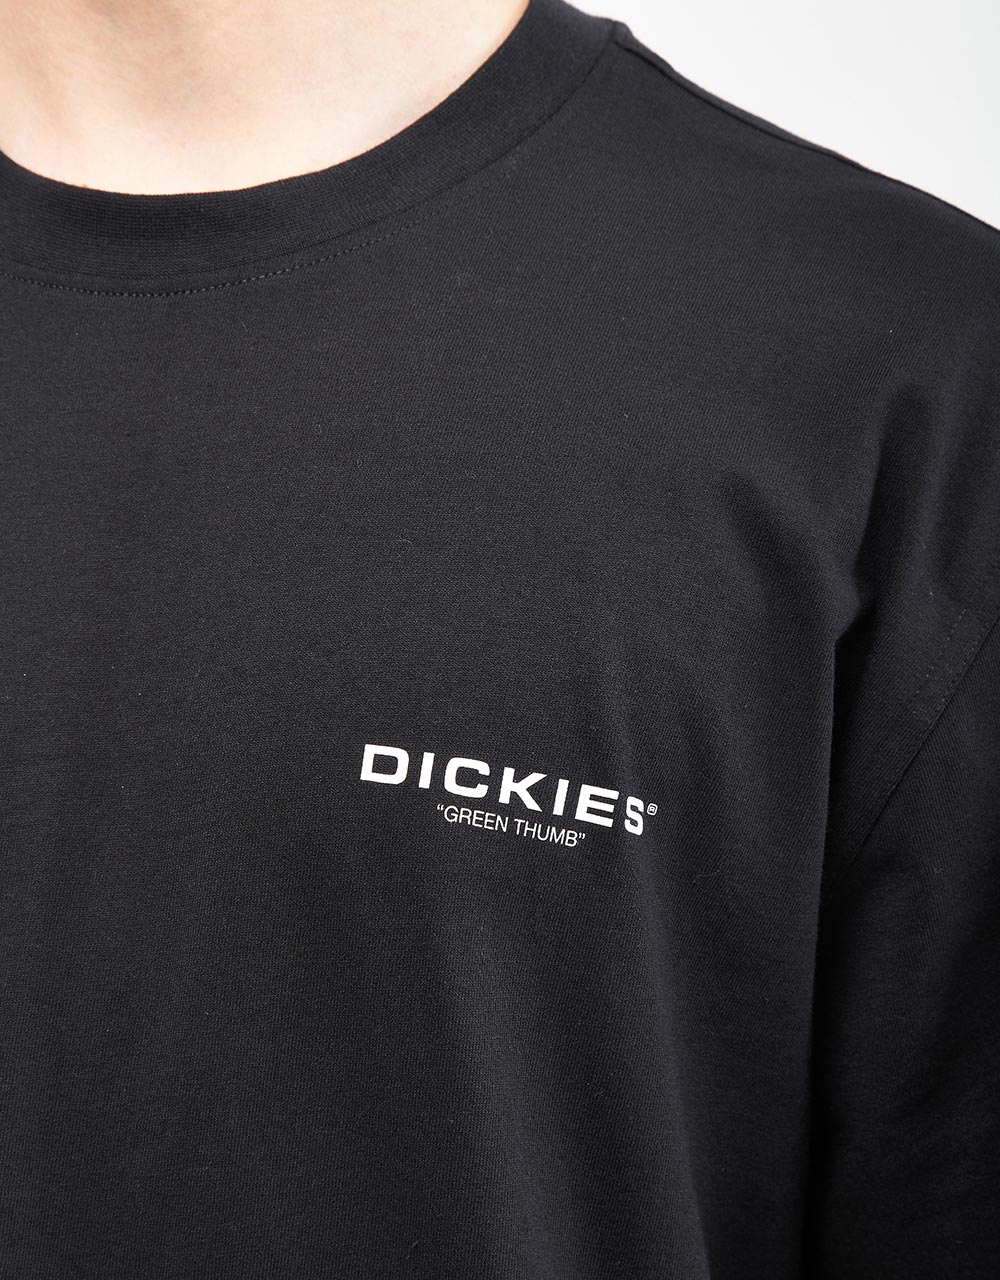 Dickies Wakefield T-Shirt - Black